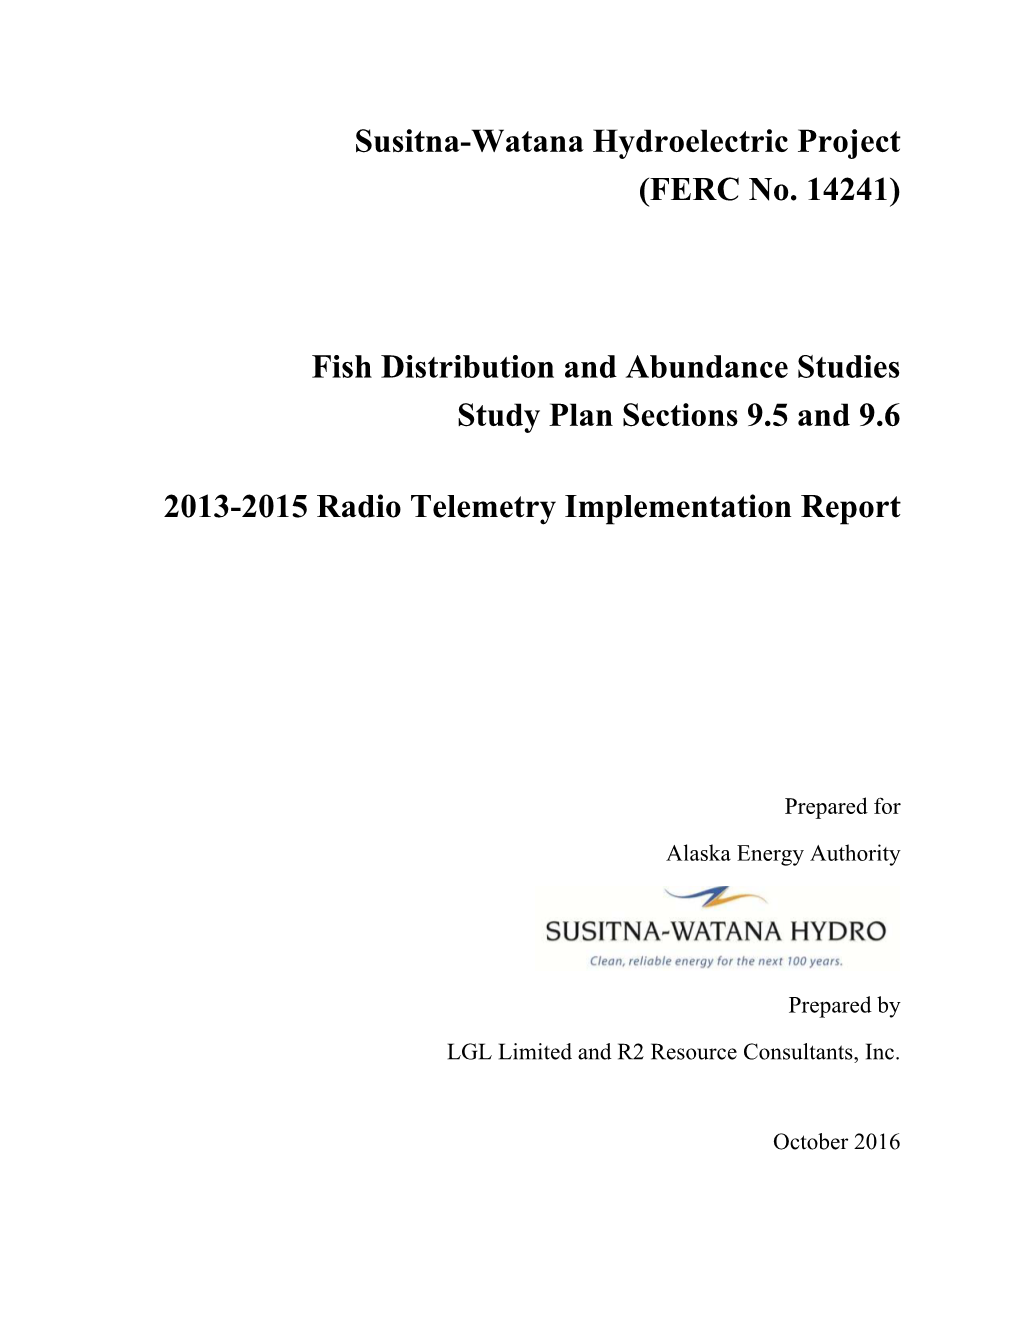 2013-2015 Radio Telemetry Implementation Report